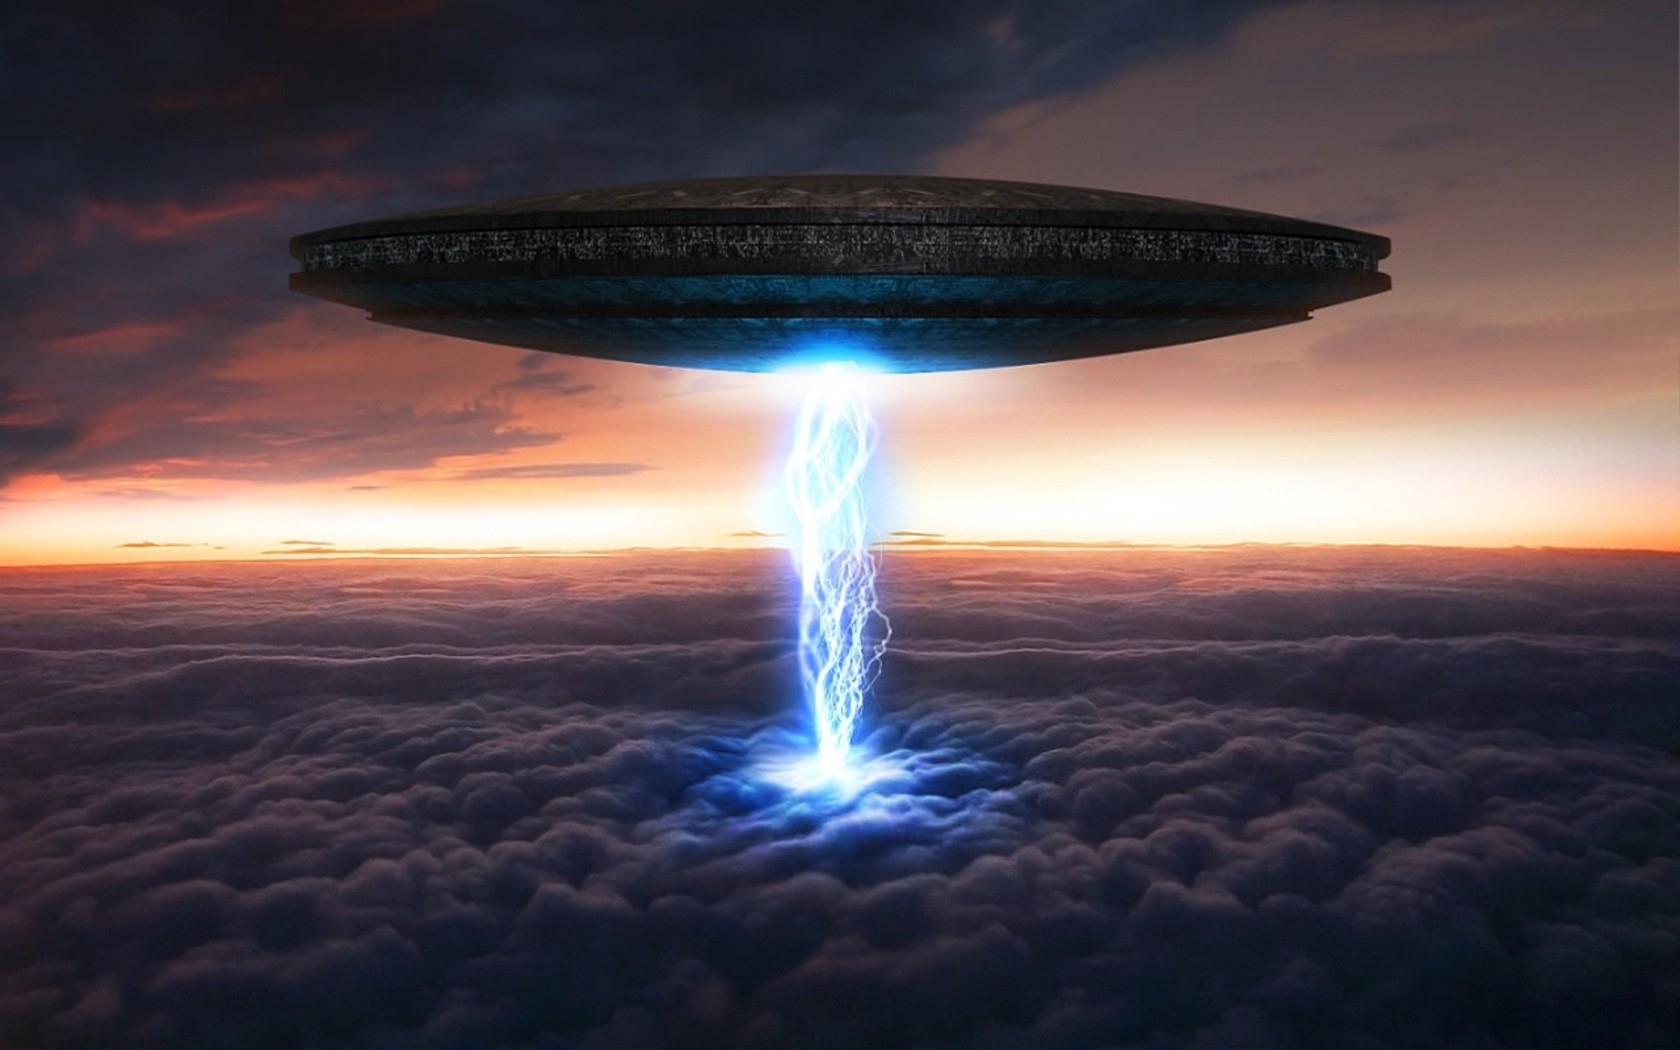 Sci Fi Aliens Ufo Spaceship Spacecraft Sky Clouds Art